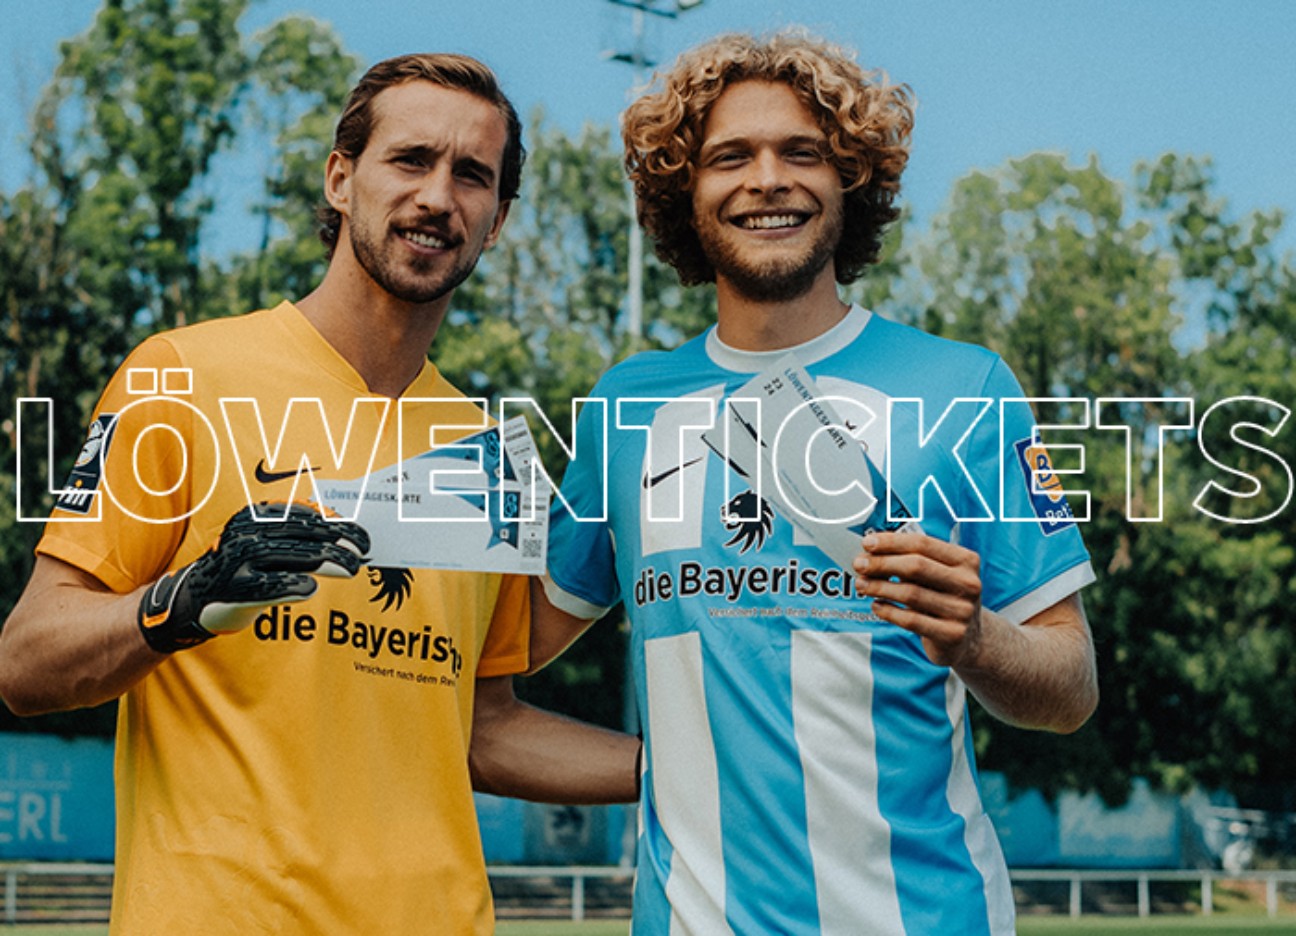 Zwei Spieler des TSV 1860 halten Tickets hoch - im Vordergrund der Schriftzug "Löwentickets"